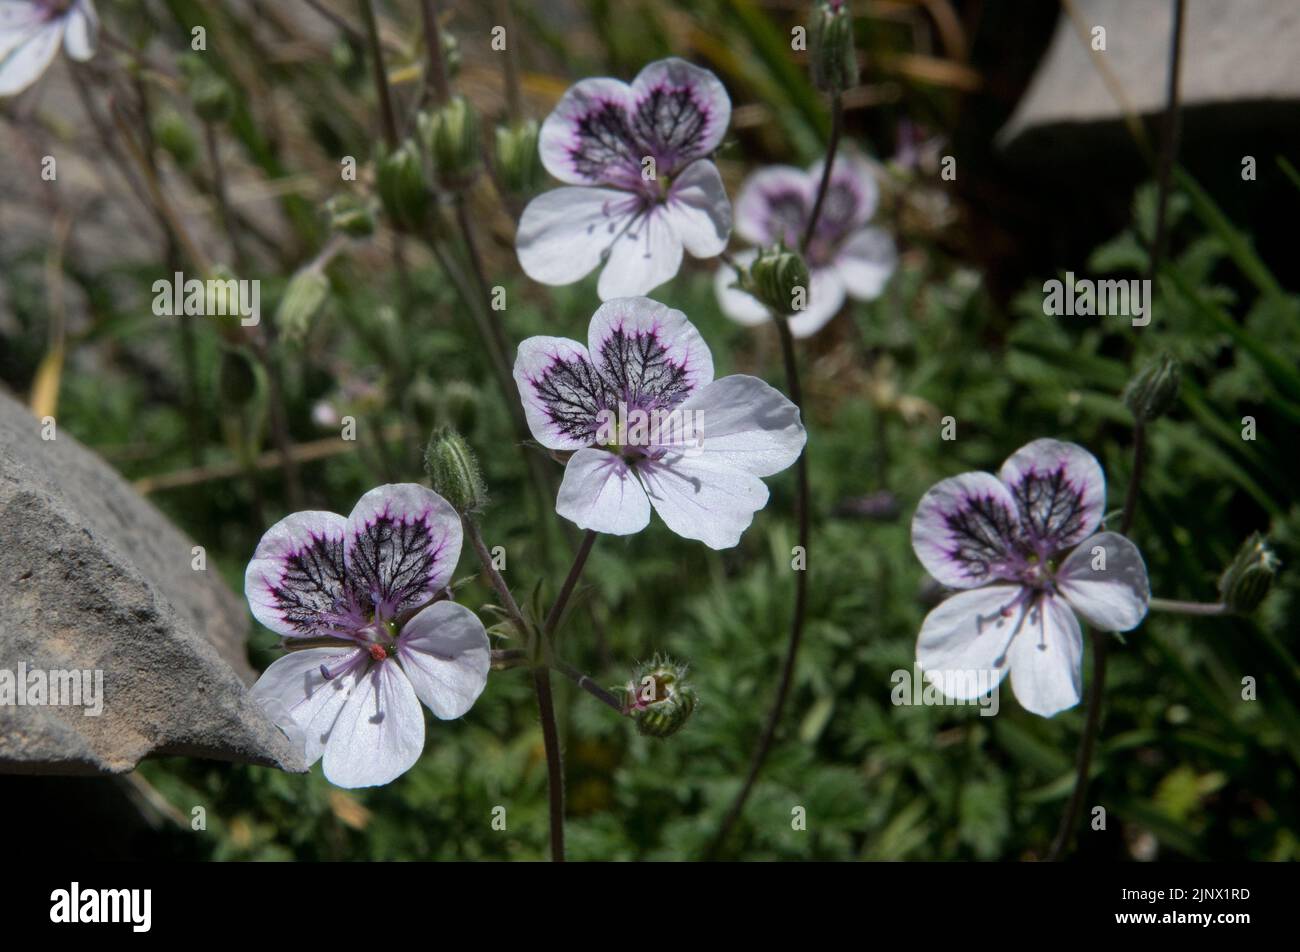 Primer plano del pico de garza de ojos negros, también llamado pico de la cigüeña pirenaica, pequeñas flores blancas y violetas Foto de stock